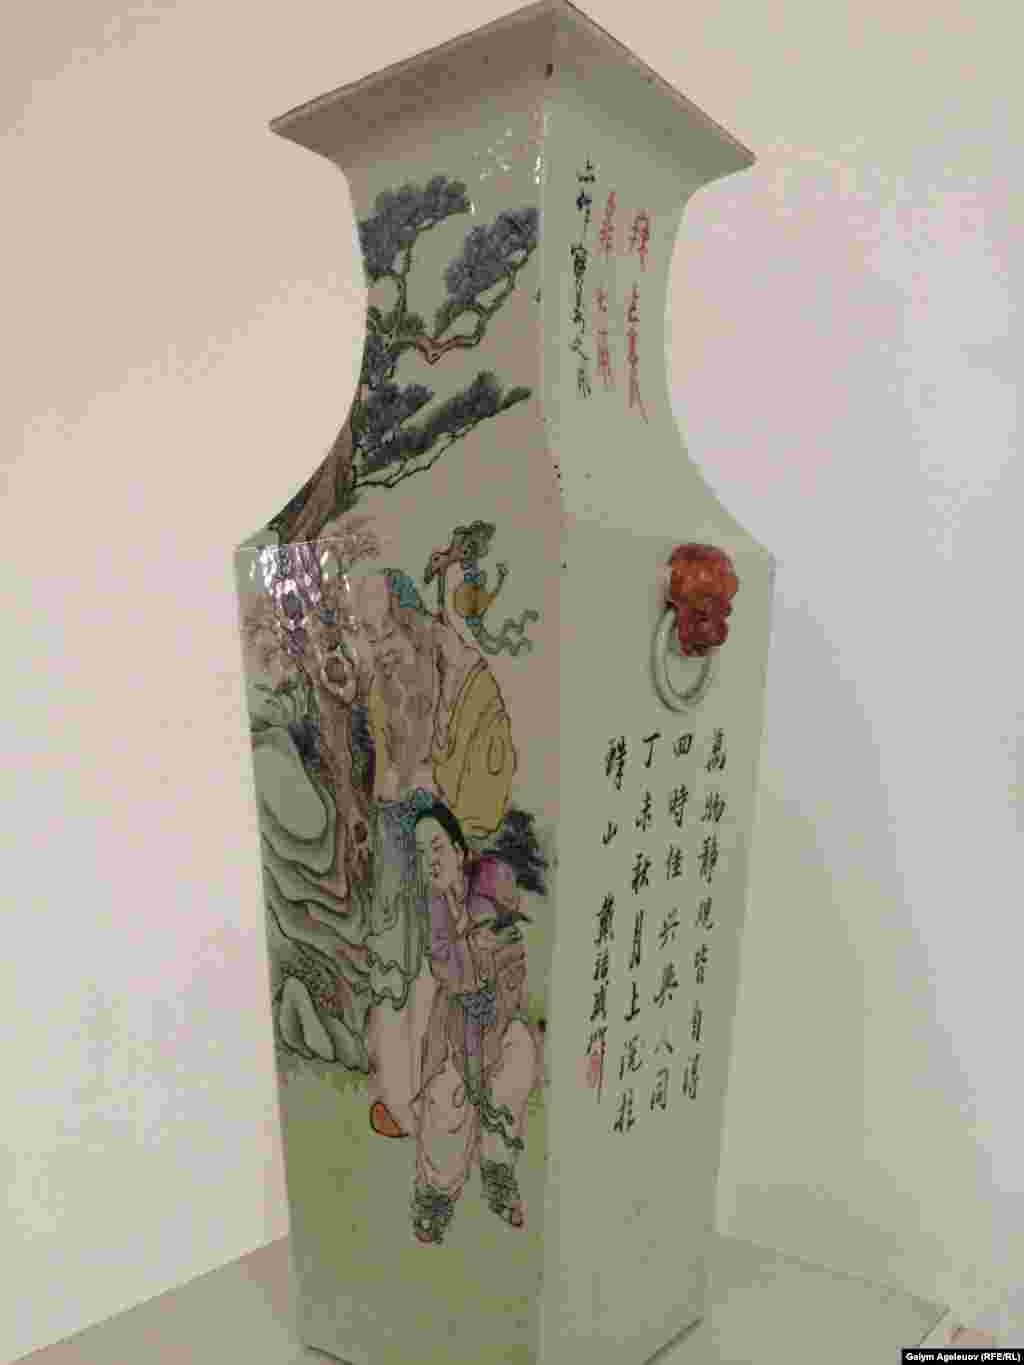 Ваза четырехгранной формы с изображением мудреца - философа Шоусина. Фарфор. Китай, 19-й век.